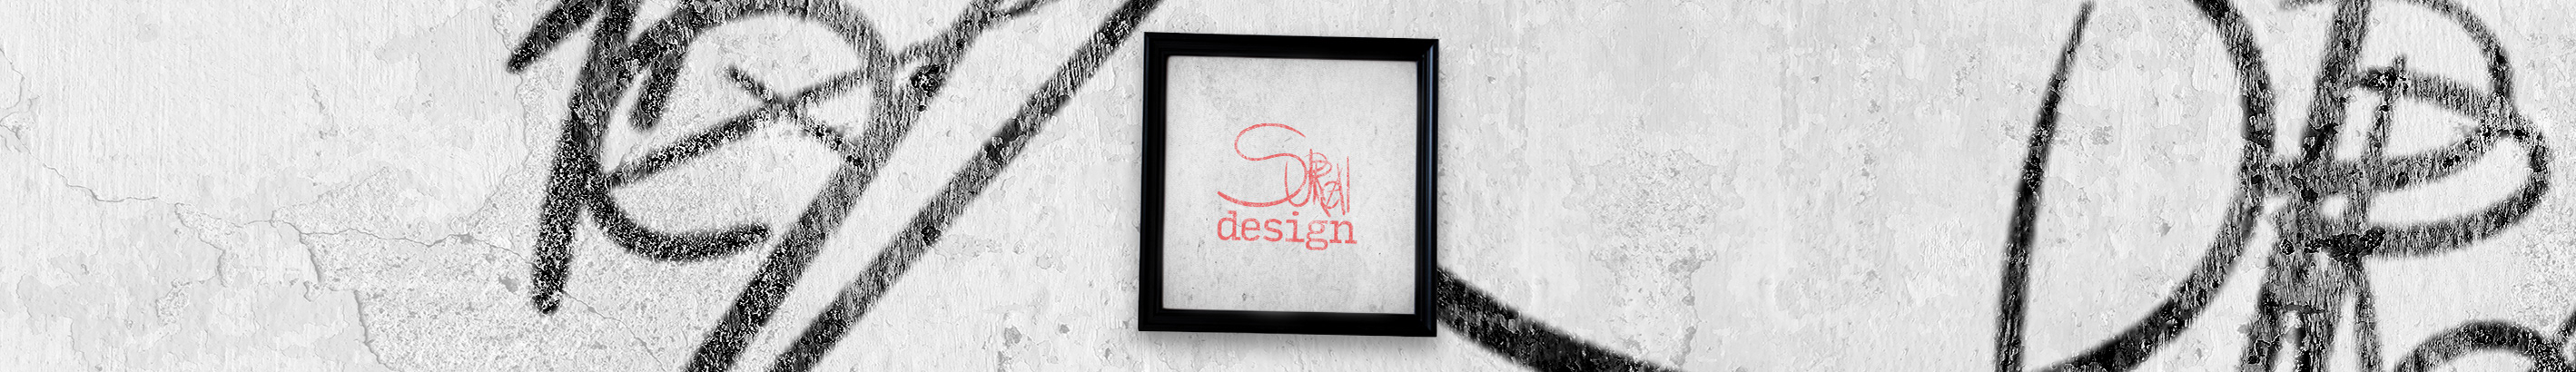 Danilo Surreal Design's profile banner